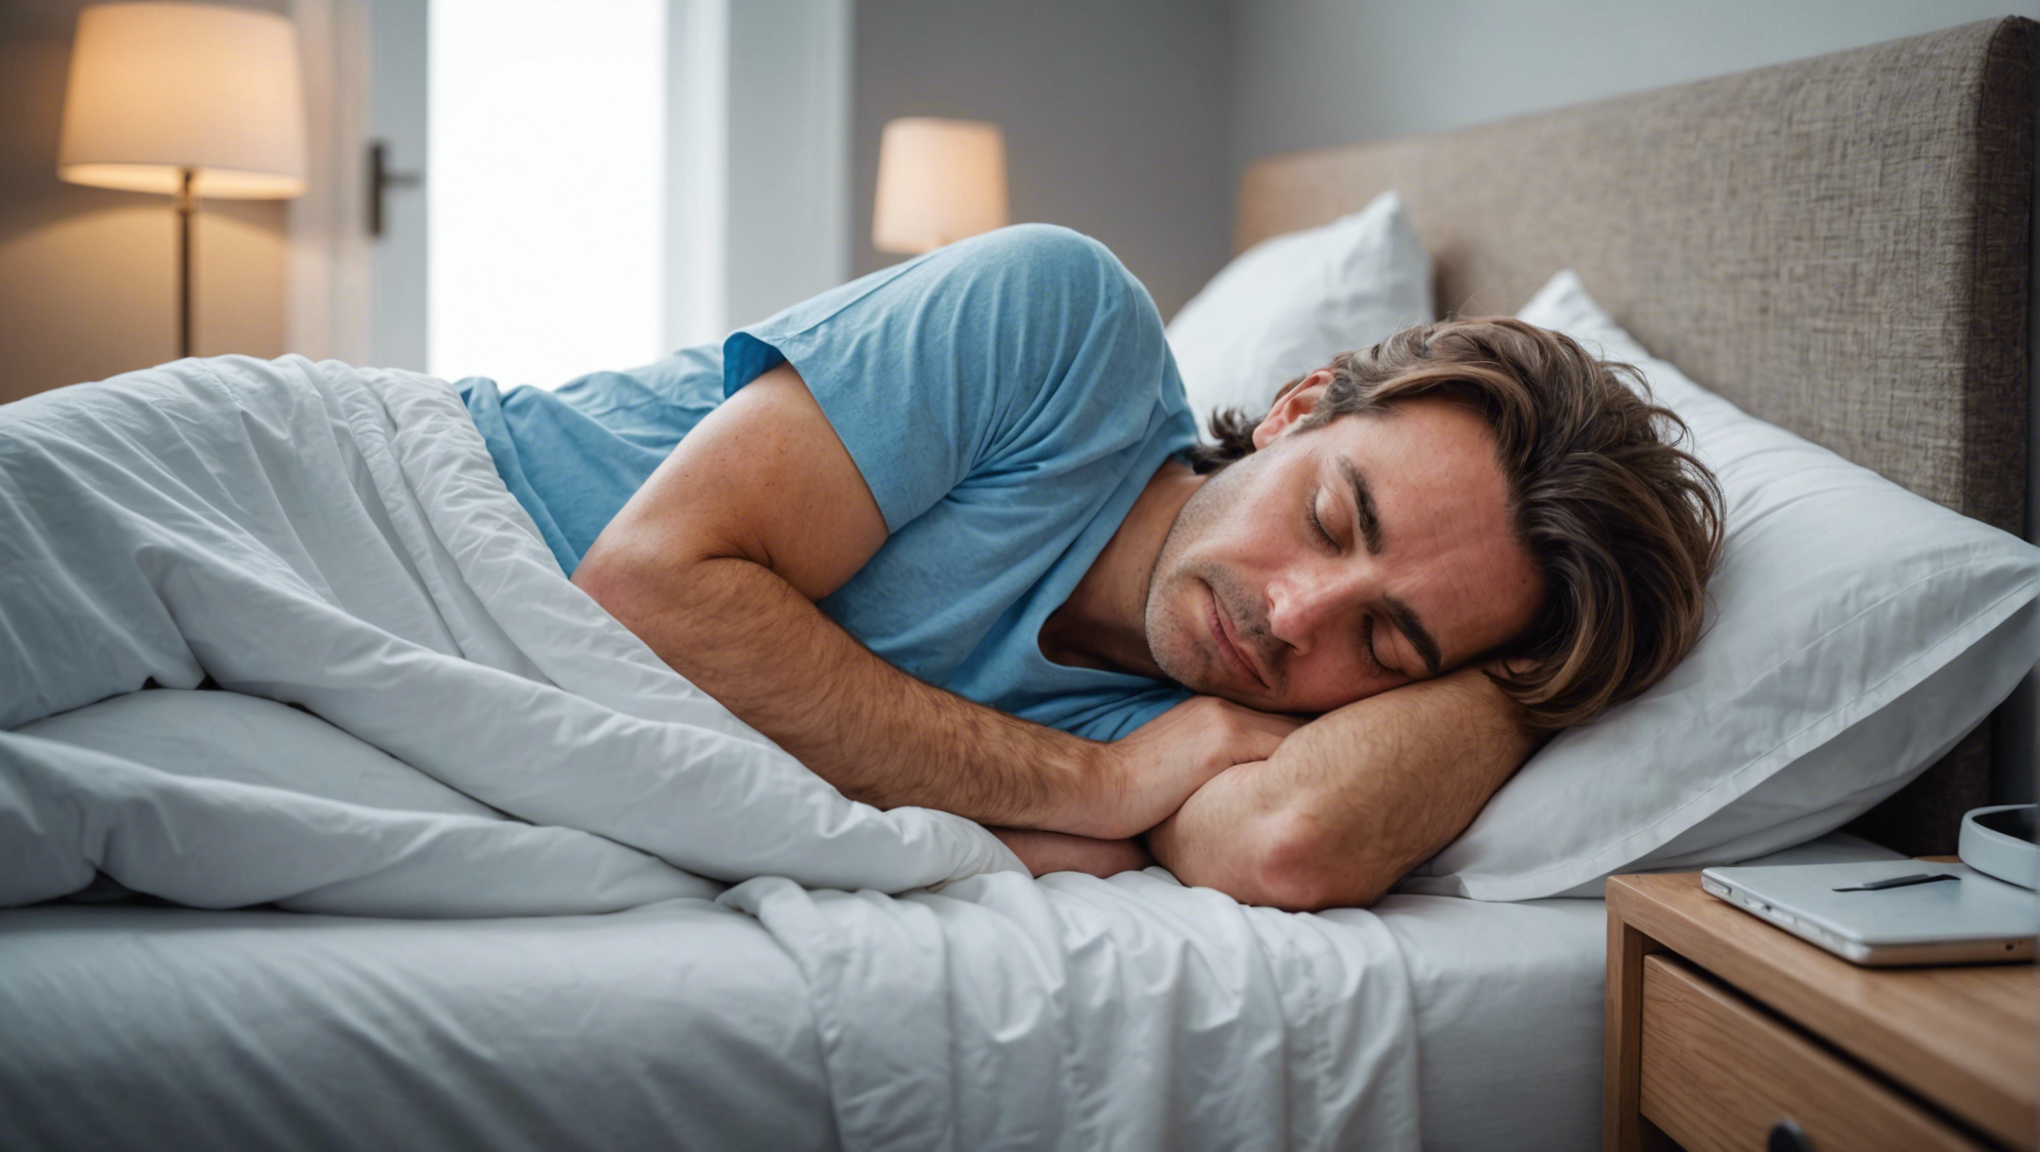 découvrez nos conseils pratiques pour réussir votre cure de sommeil à la maison et ainsi retrouver un sommeil de qualité. profitez de nuits réparatrices et d'un repos optimal grâce à nos astuces efficaces.